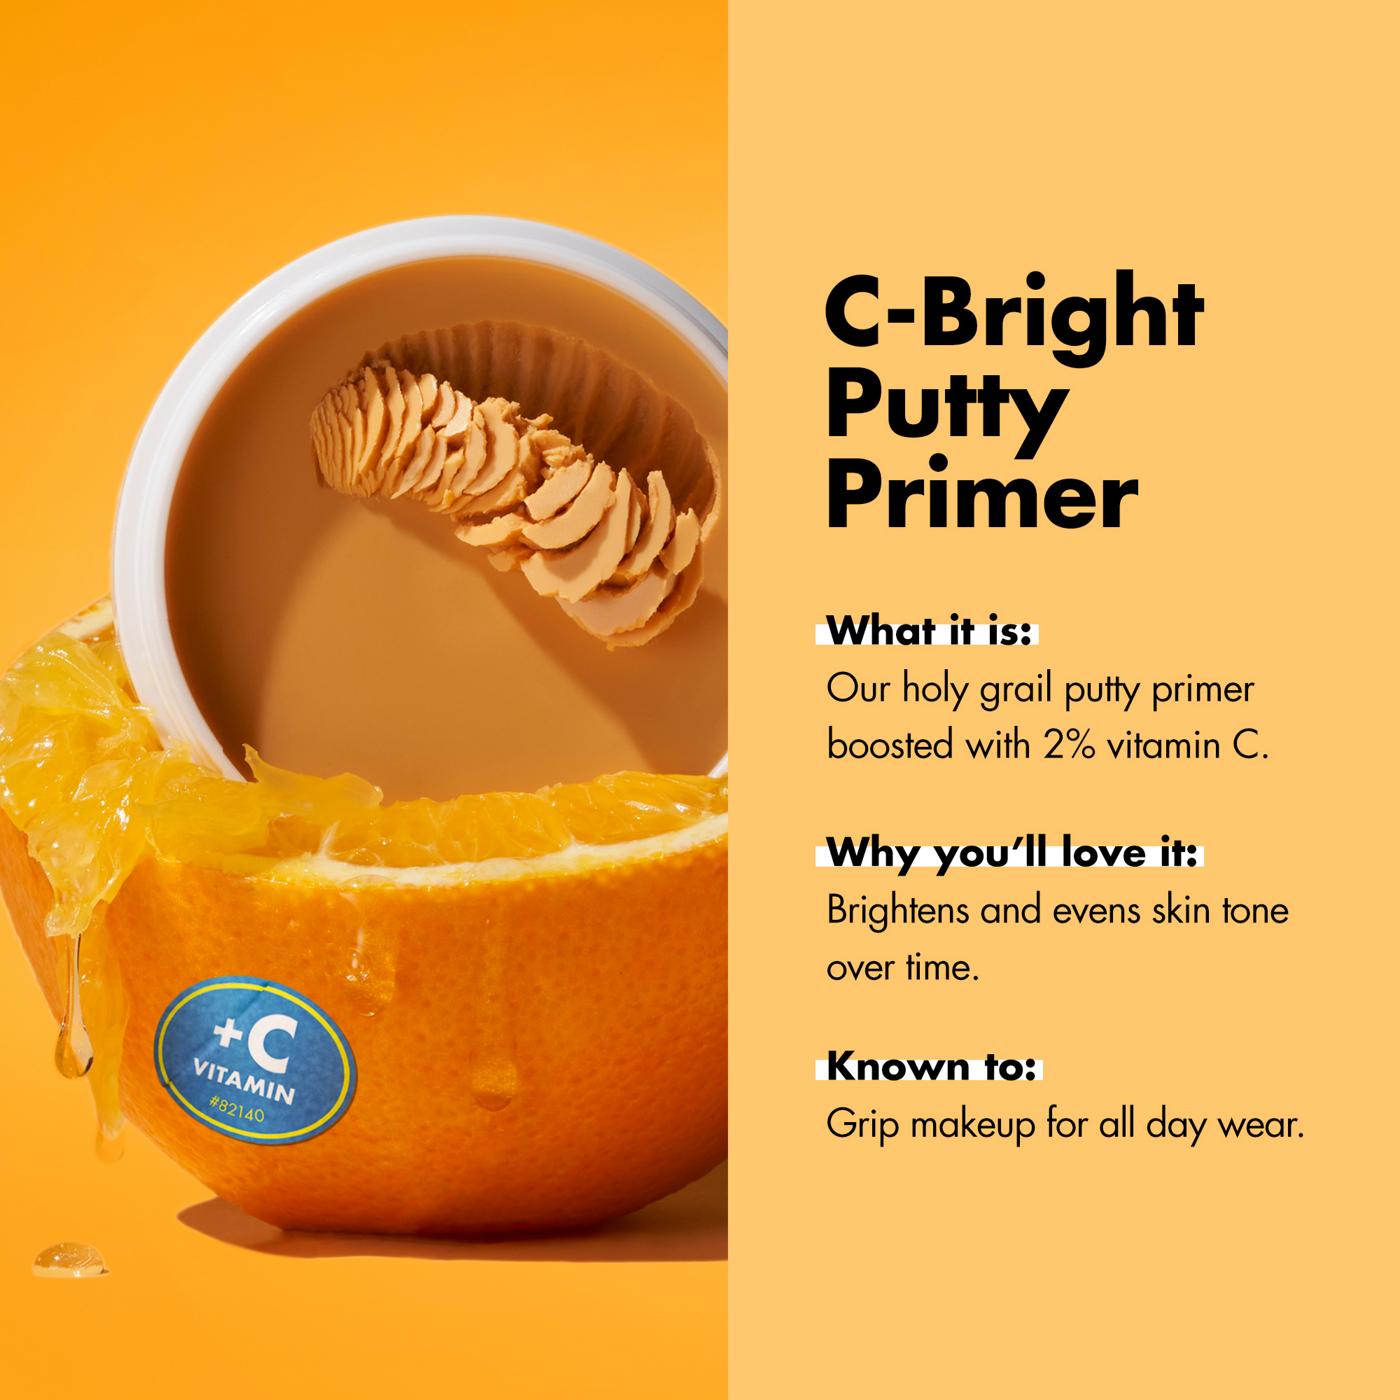 e.l.f. C-Bright Putty Primer with Vitamin C; image 4 of 7